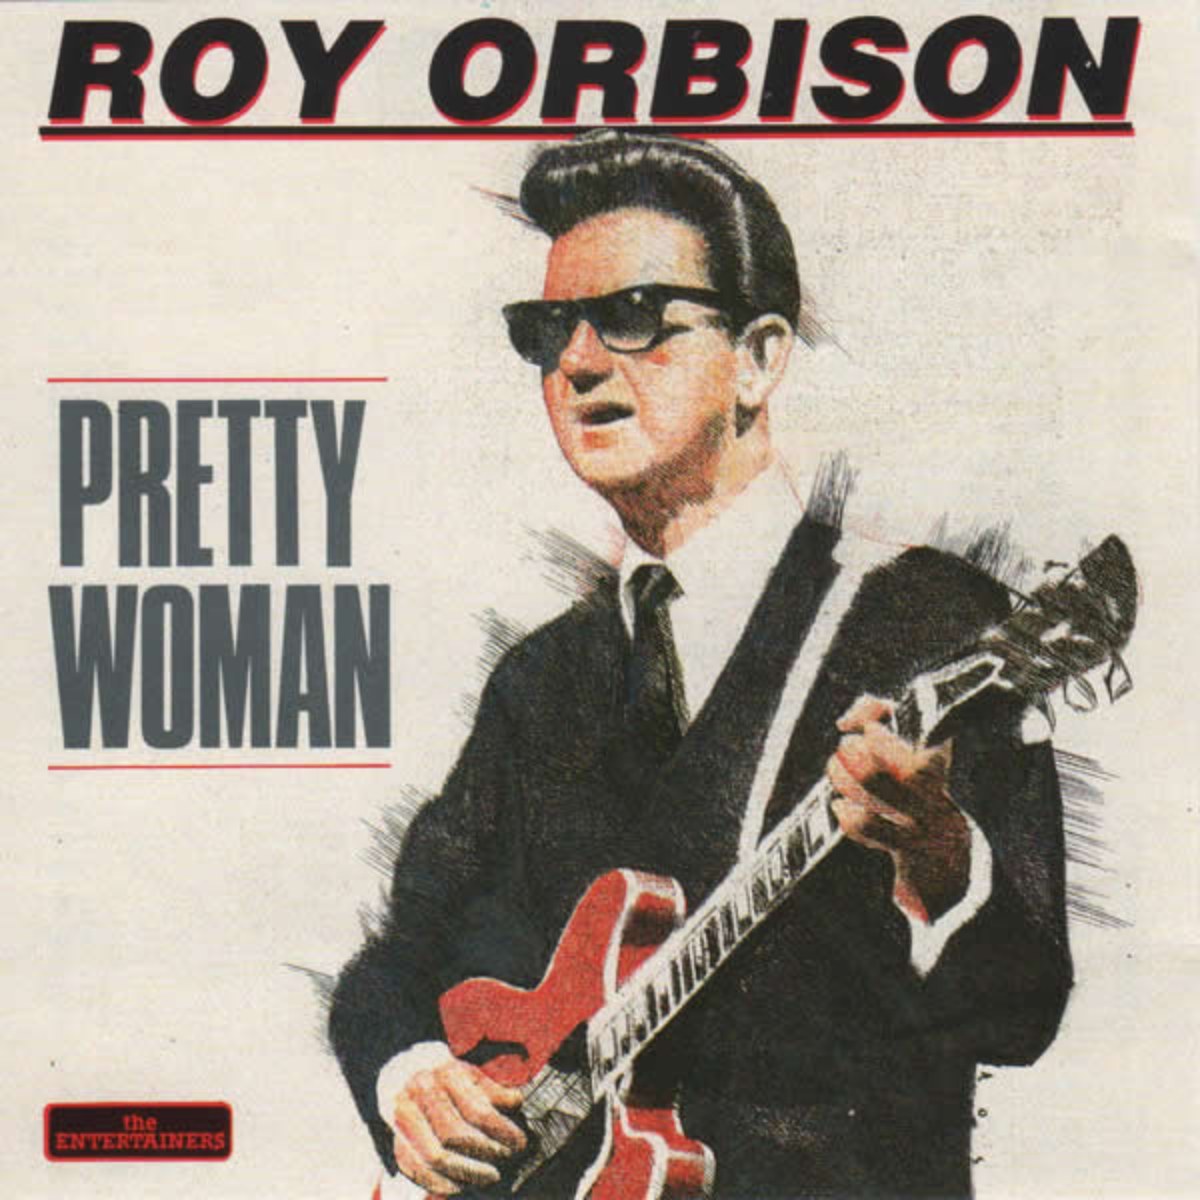 Reprise du single "oh, Pretty Woman".